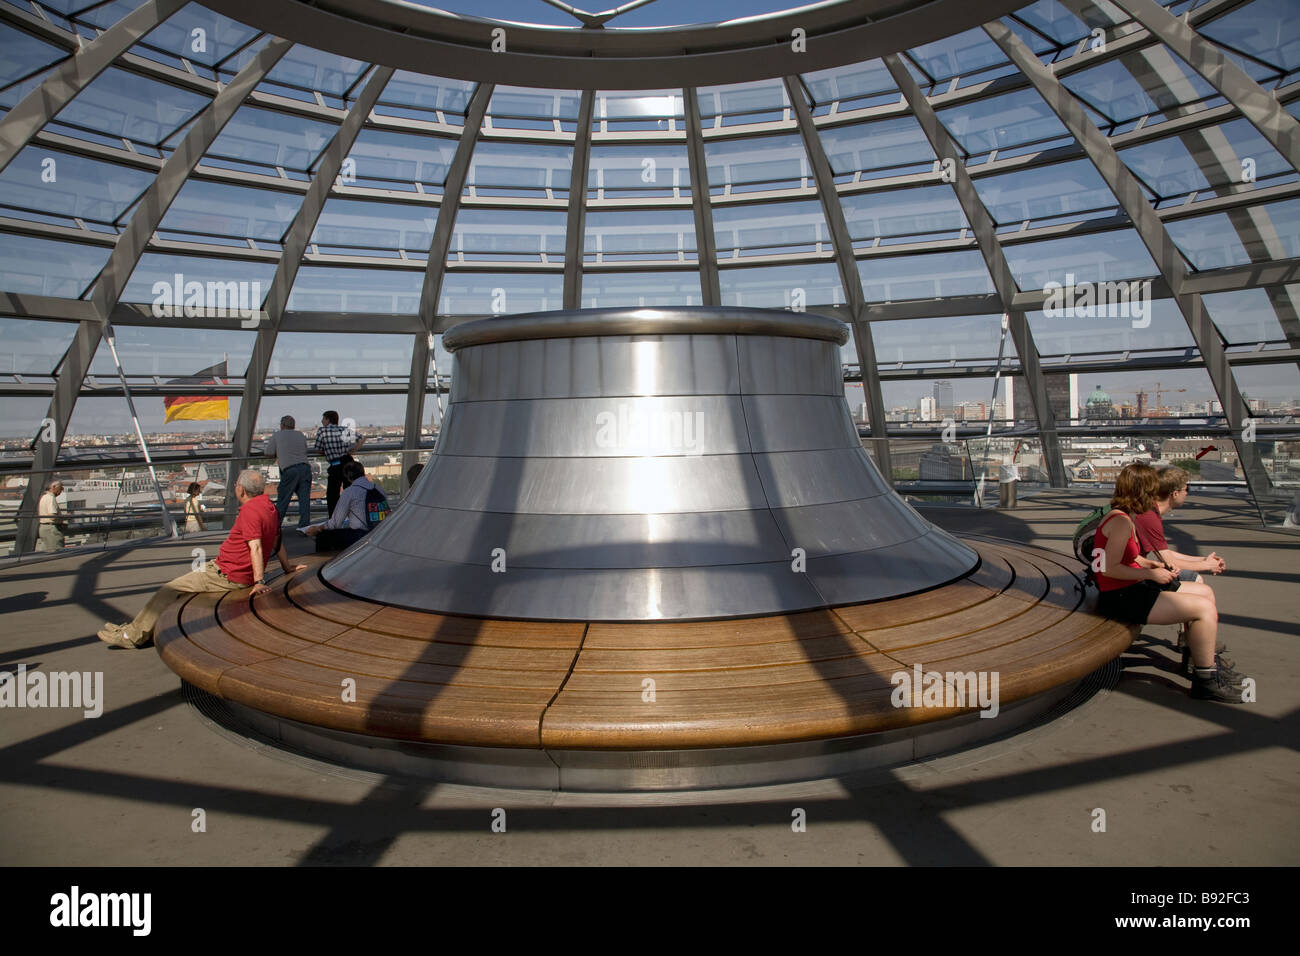 La cupola di vetro in cima al Reichstag dove i visitatori possono osservare il Bundestag la Camera Bassa del parlamento tedesco Foto Stock